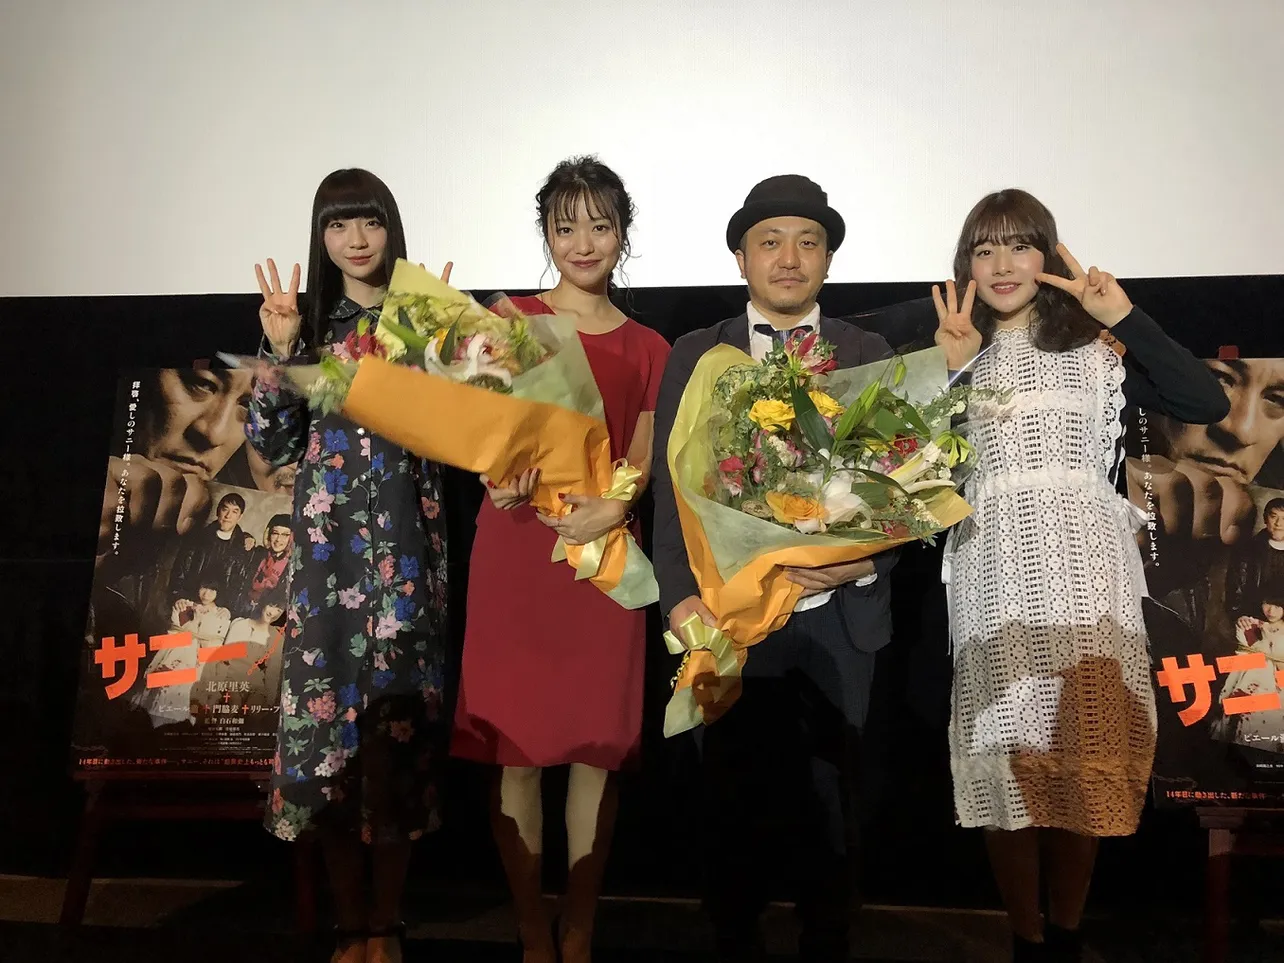 「サニー/32」の新潟県先行公開を祝して行われたイベントに荻野由佳、北原里英、白石和彌監督、加藤美南(写真左から)が登壇